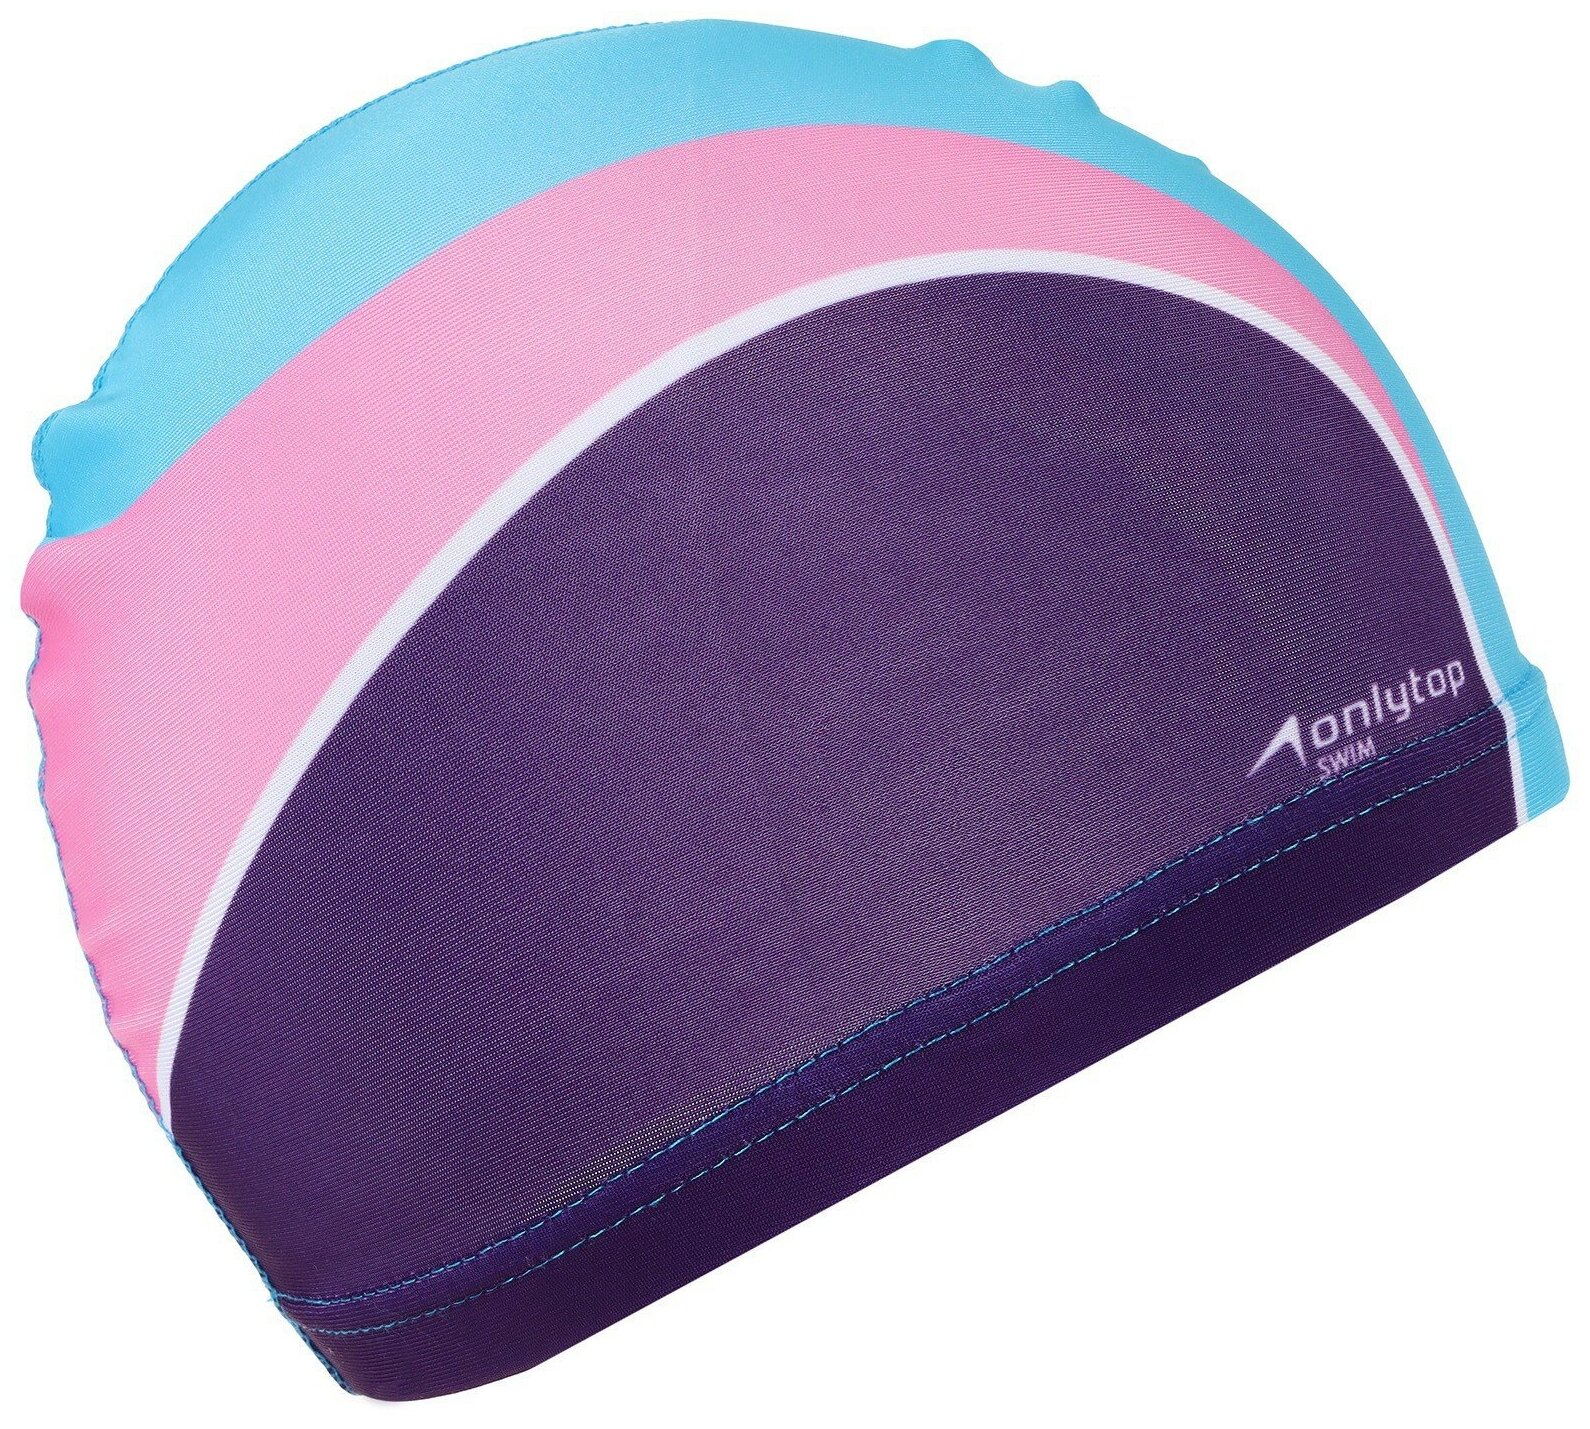 Шапочка для плавания ONLYTOP, детская, обхват головы 46-52 см, цвет фиолетовый, розовый, голубой